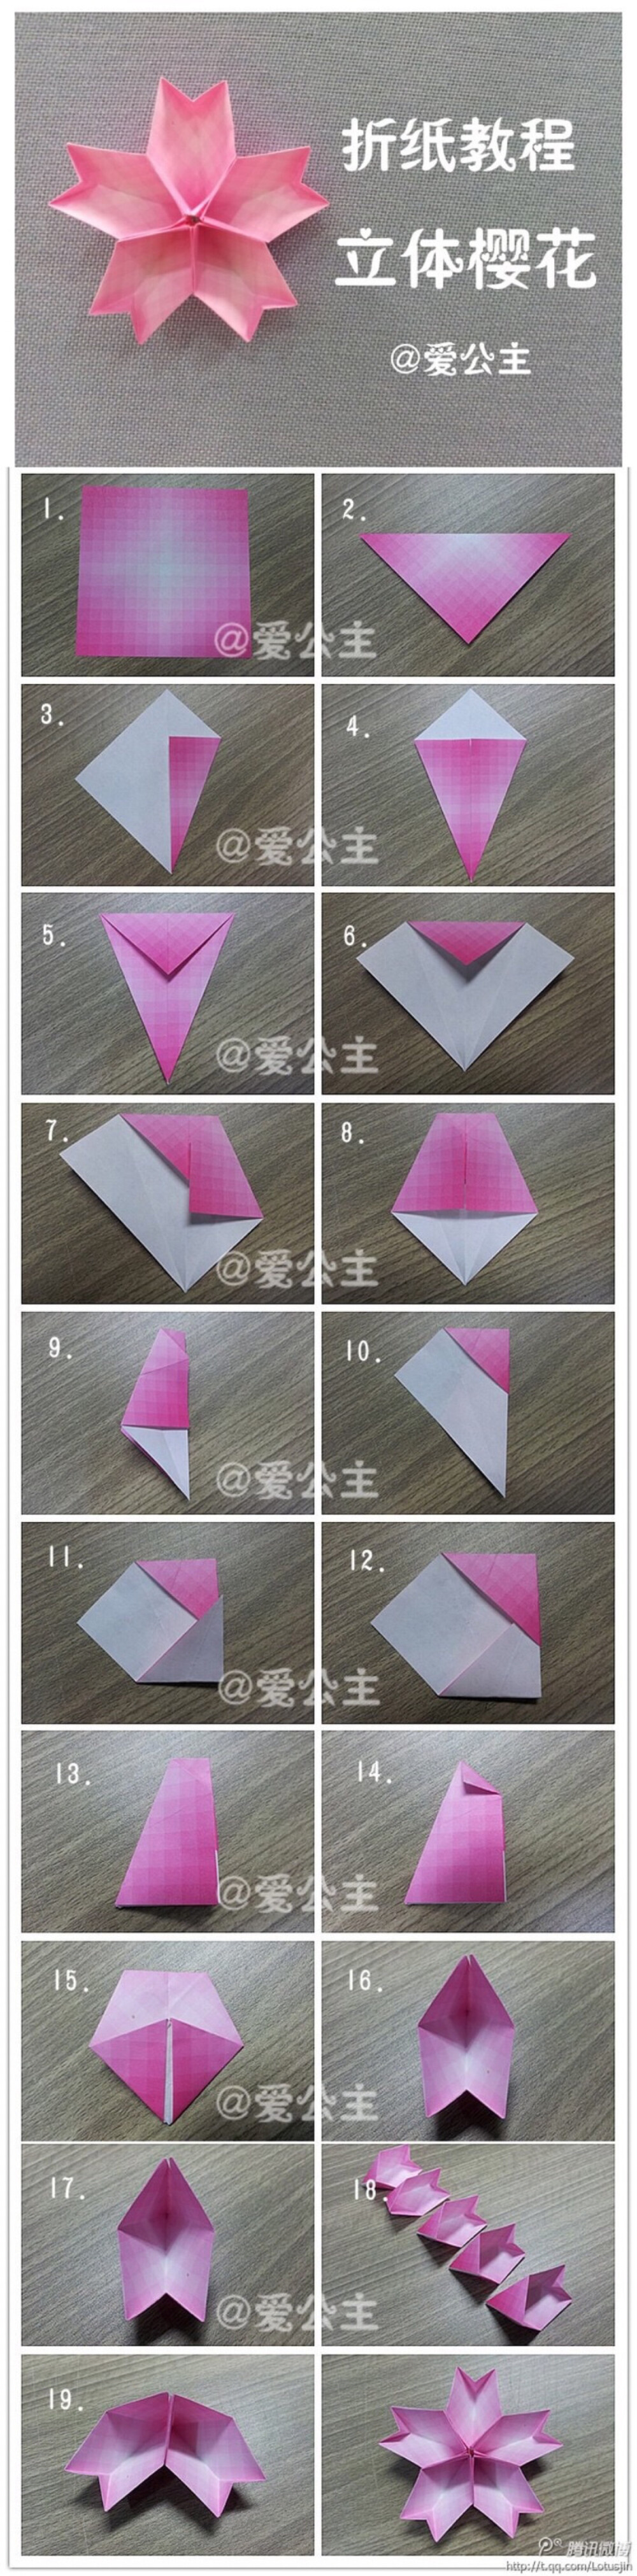 樱花折纸